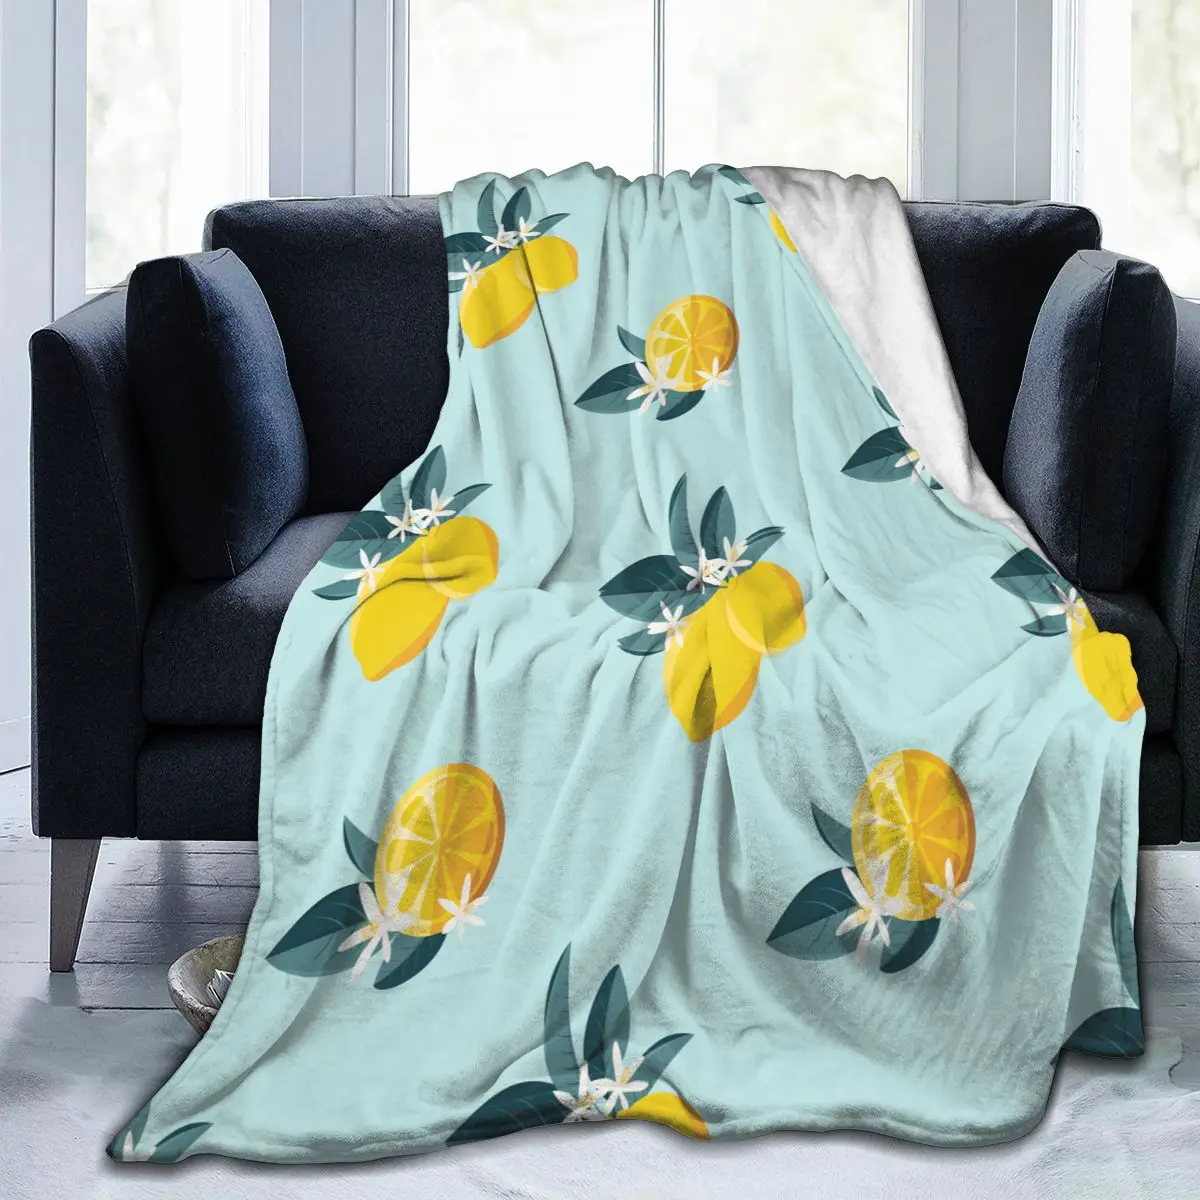 

Уникальное одеяло для друзей, Тропическое, летнее, лимонный узор, прочное, супермягкое, удобное для дома, подарочное одеяло